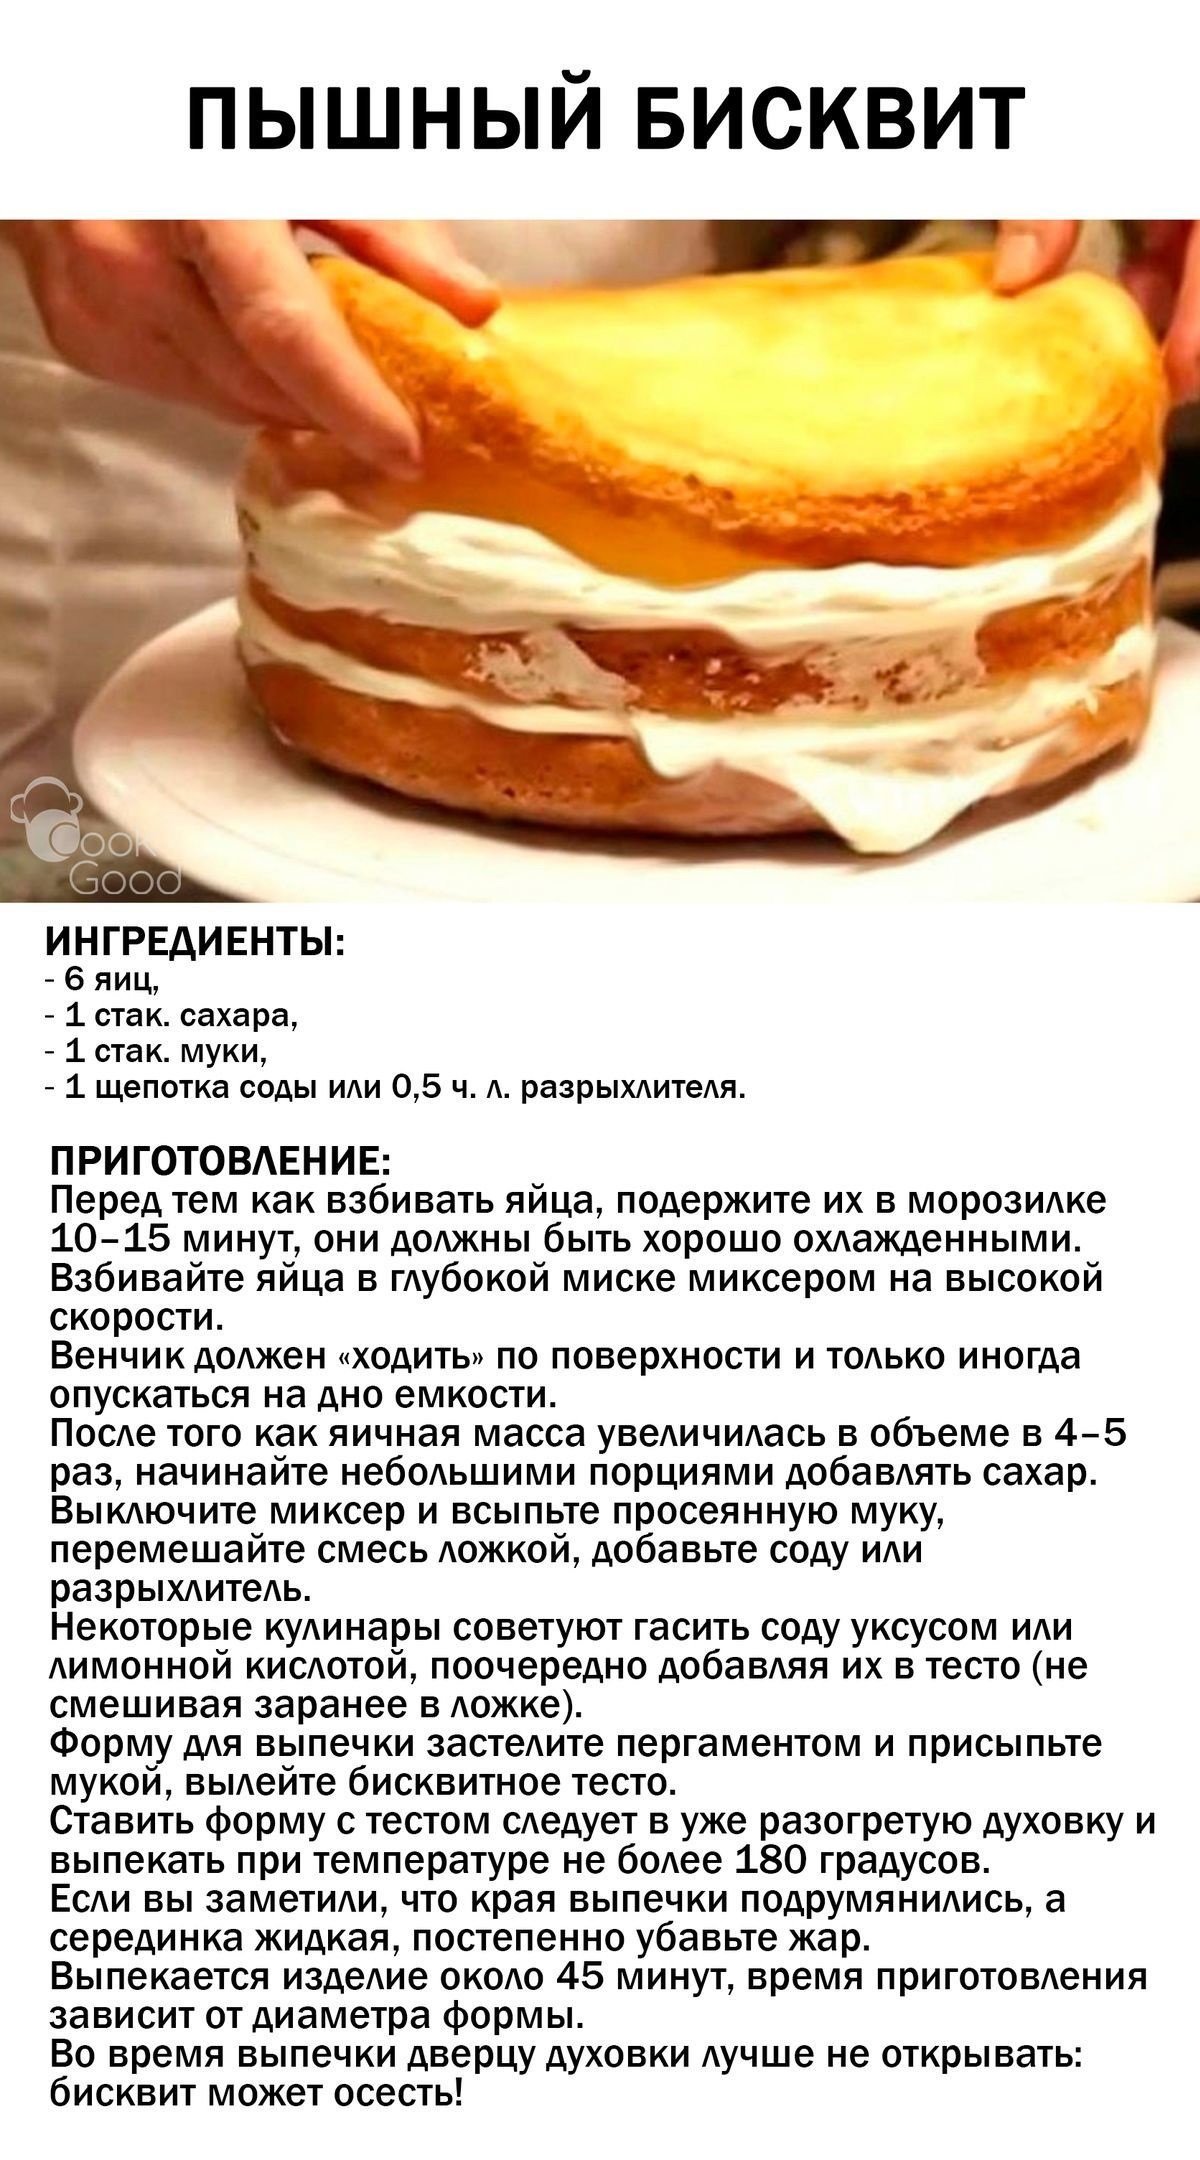 Как сделать бисквит быстро. Рецепт приготовления бисквита для торта. Рецепт вкусного бисквита для торта в домашних. Рецепт бисквита для торта классический. Бисквит рецепт пышный.